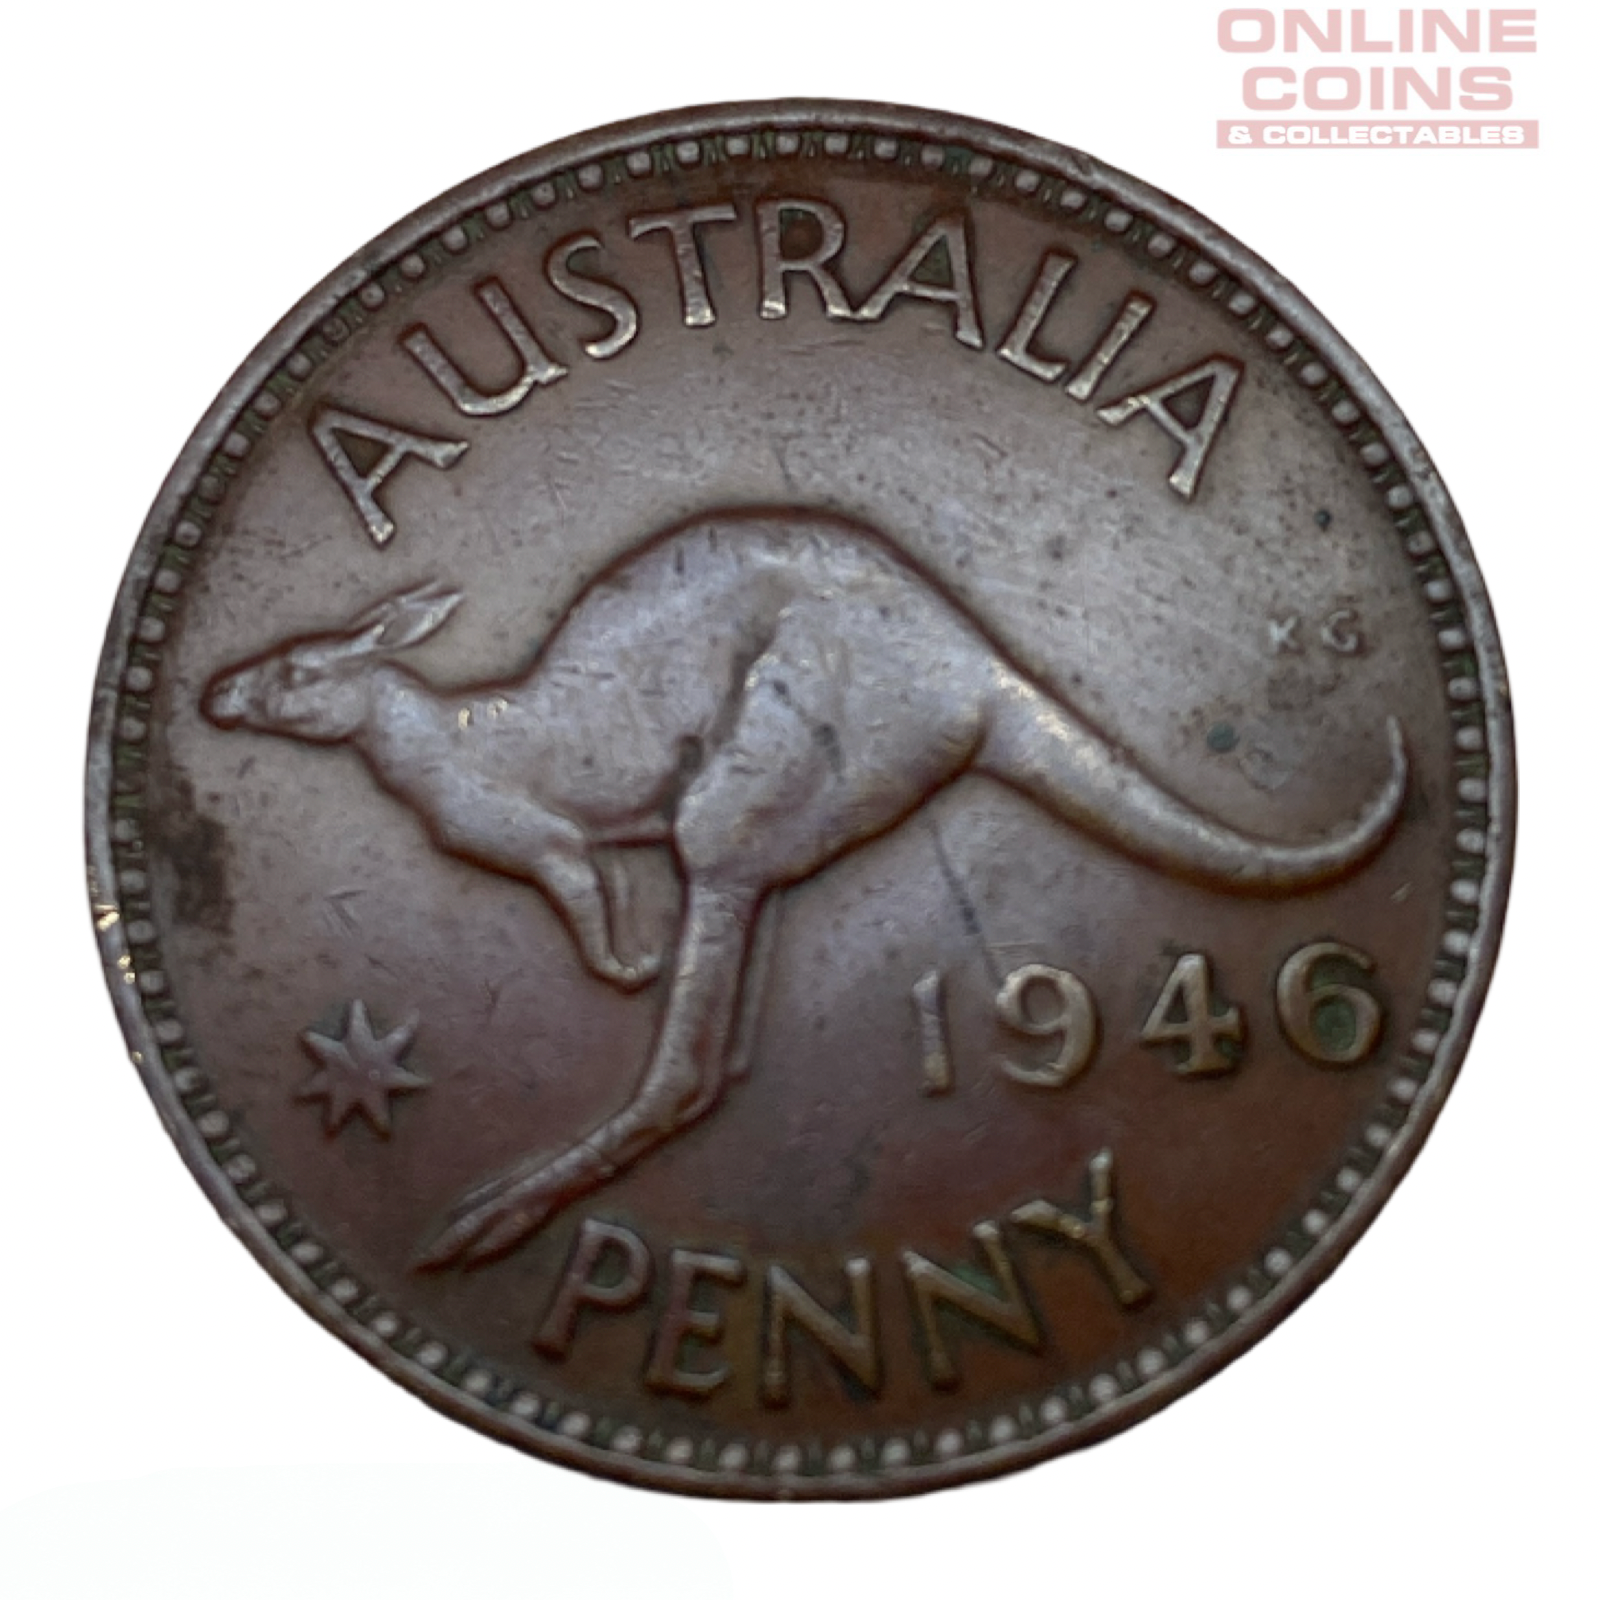 1946 Australian Penny - Red - Very Fine